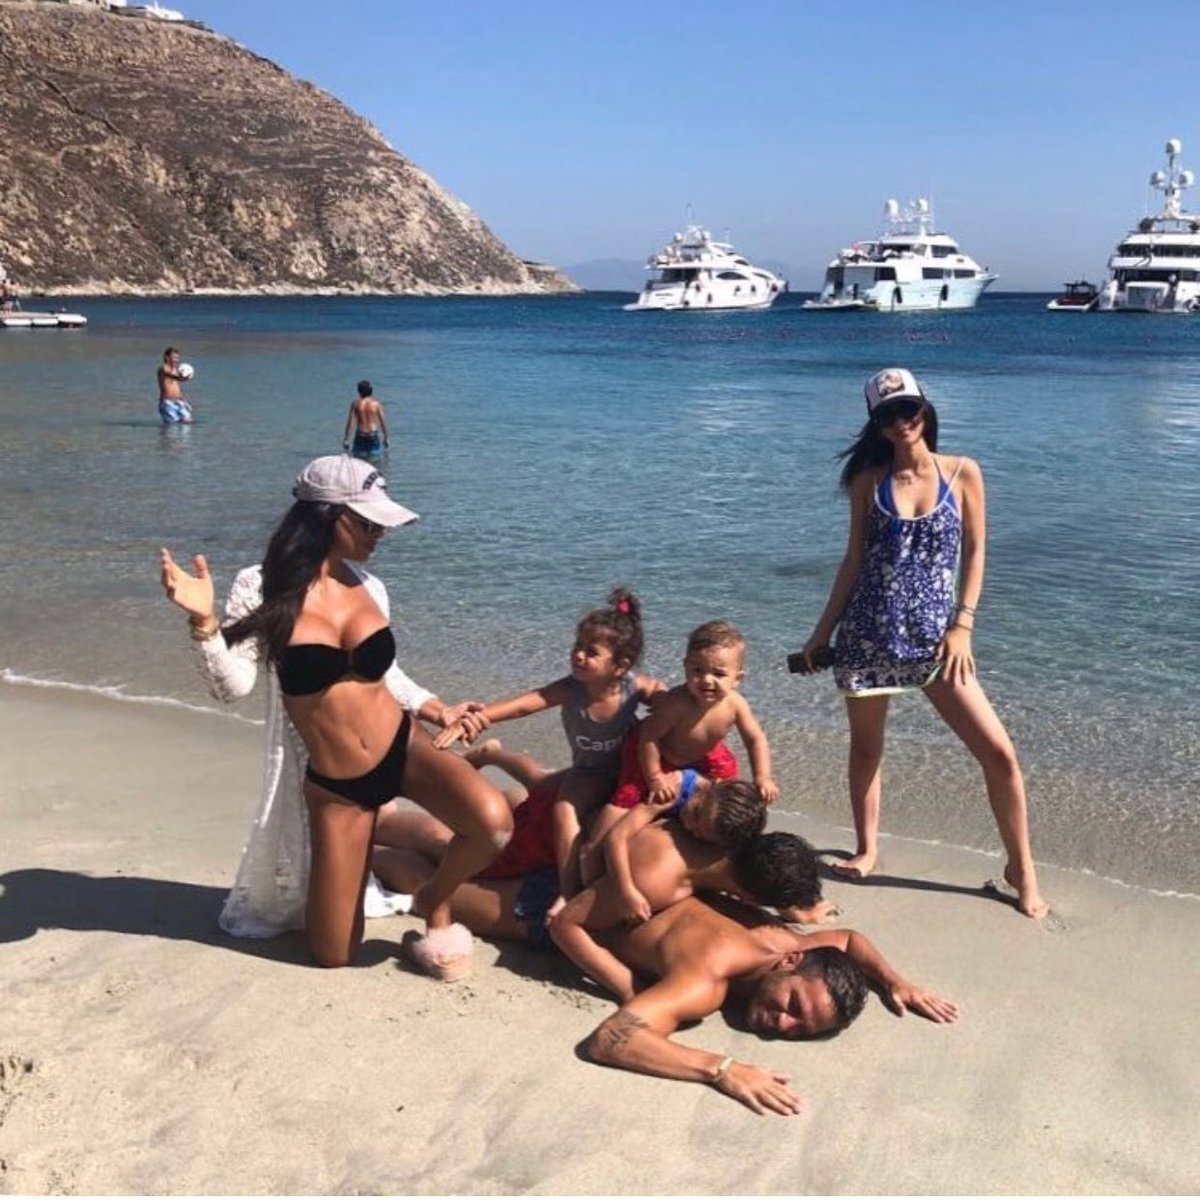 Cesc FÃ bregas en la playa con su familia.